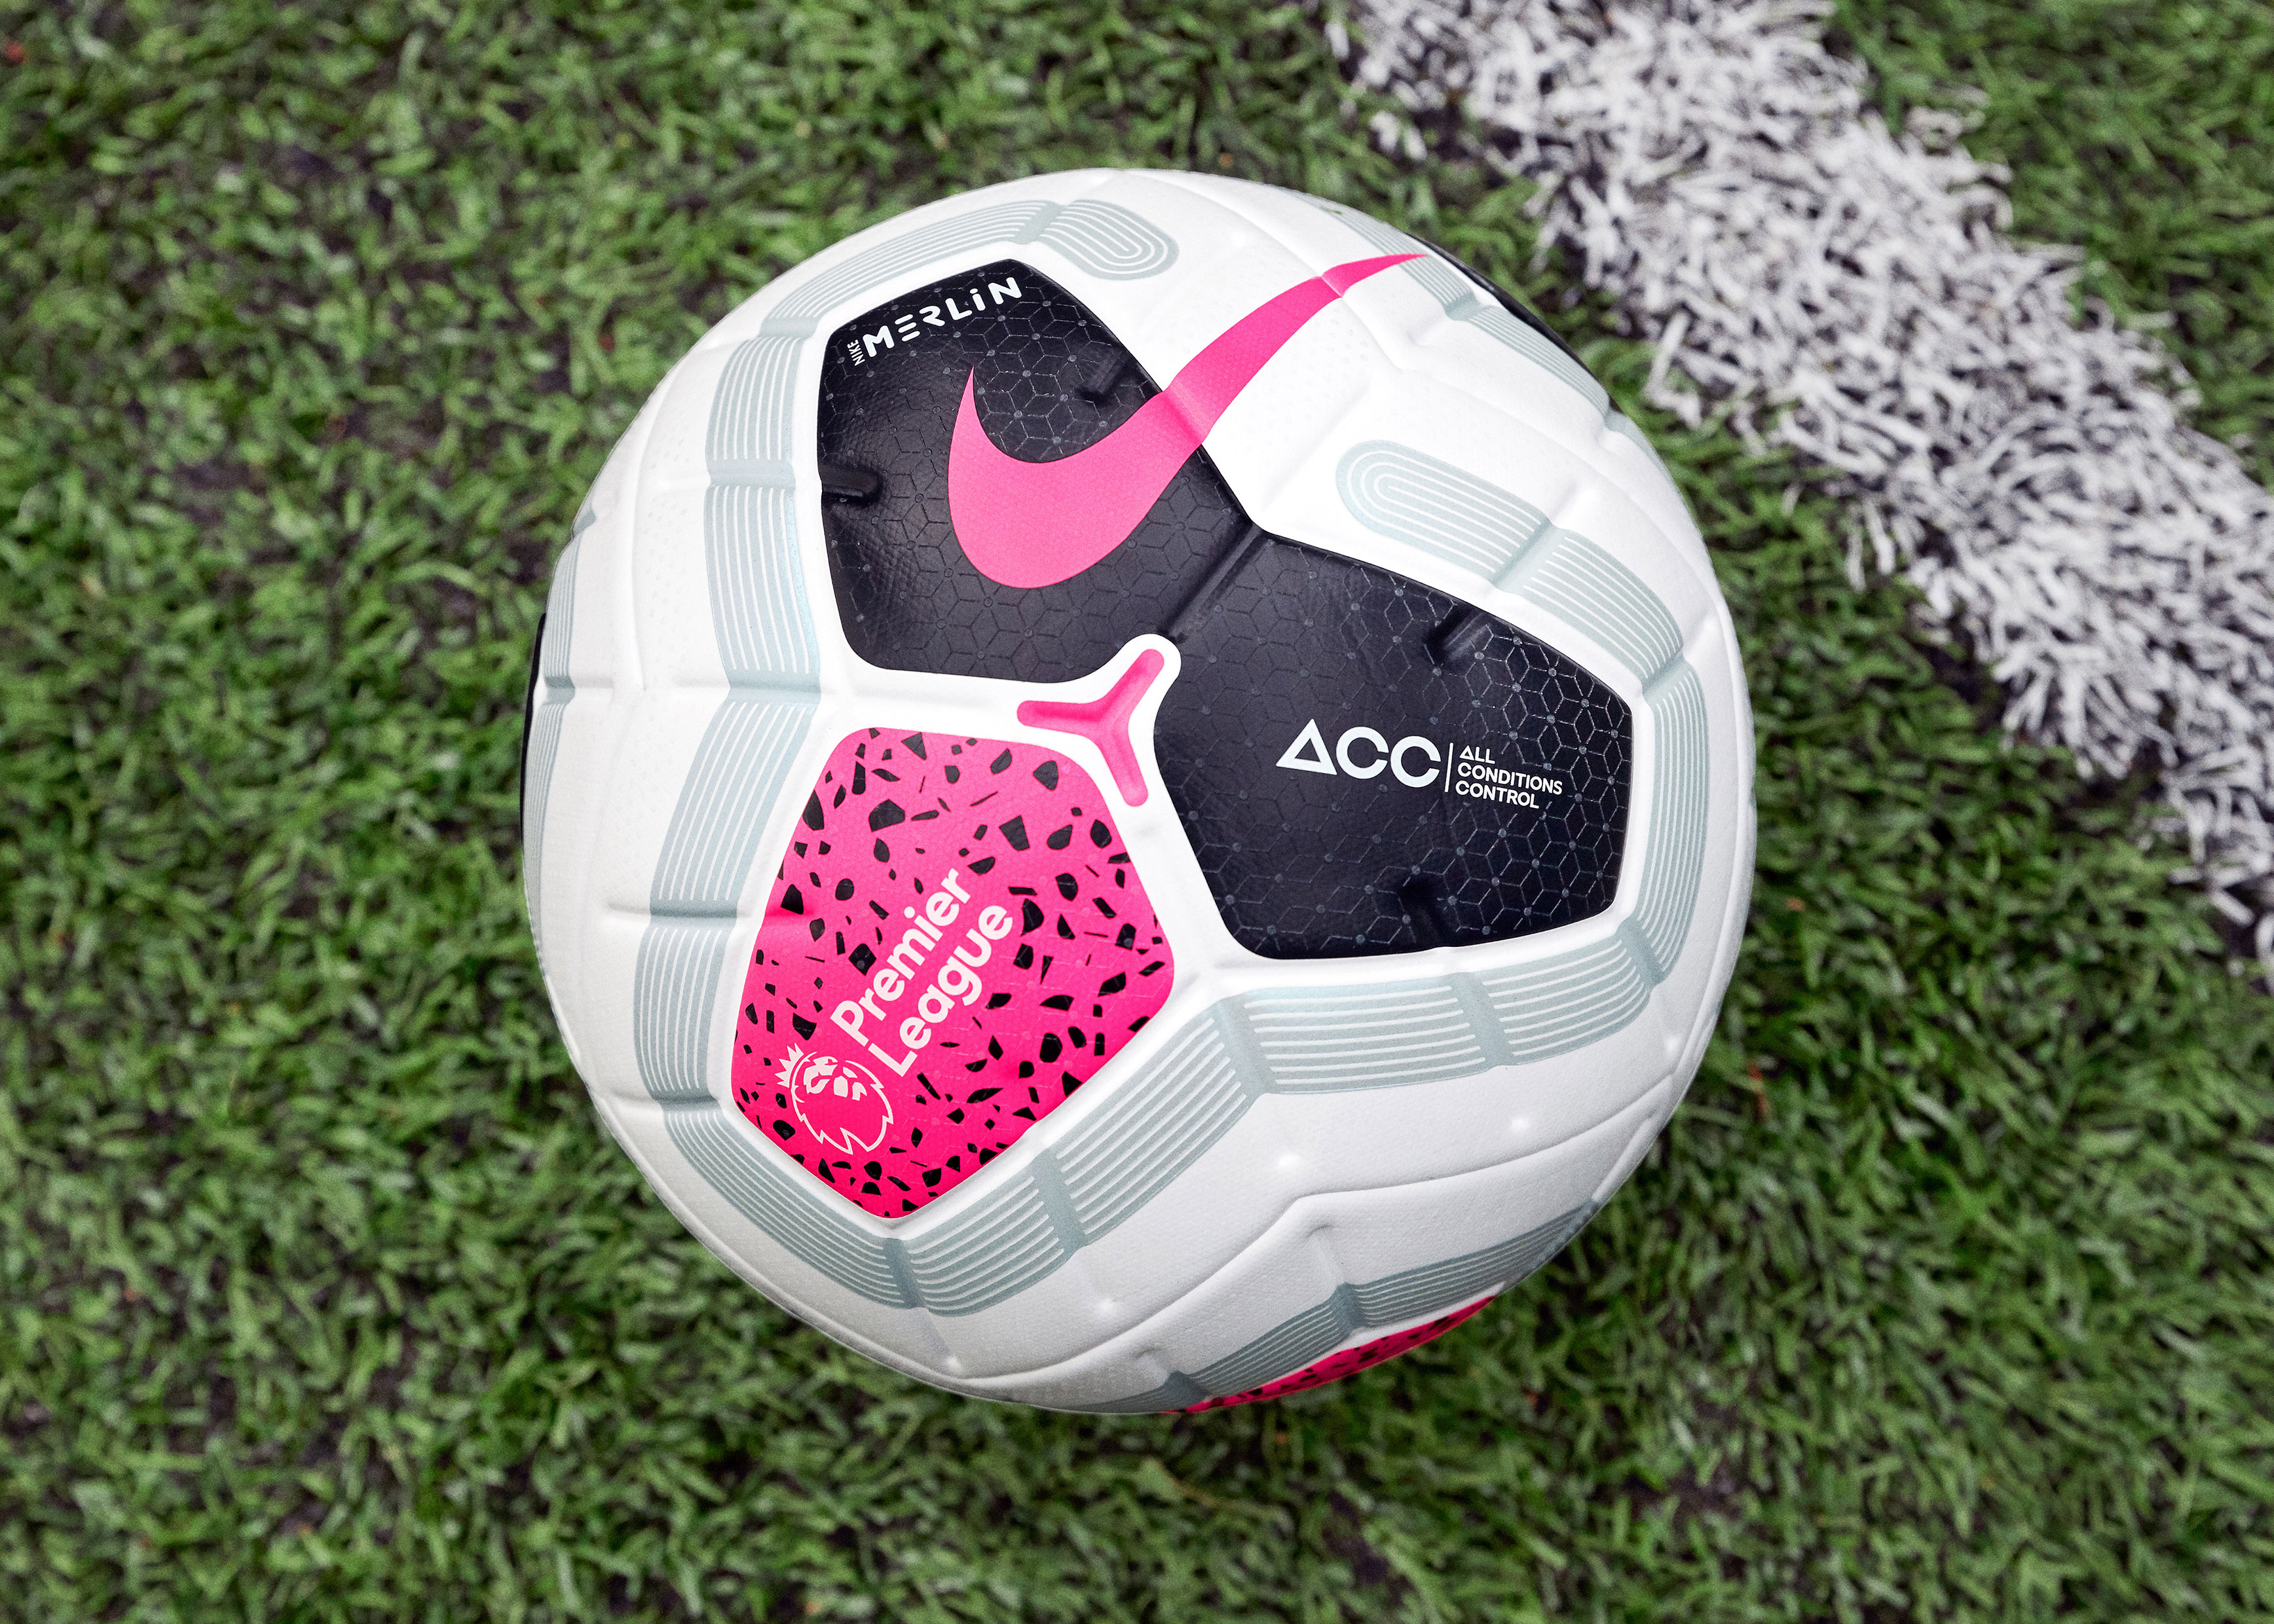 Nike Merlin – El balón oficial la Premier League - 11teamsports.es